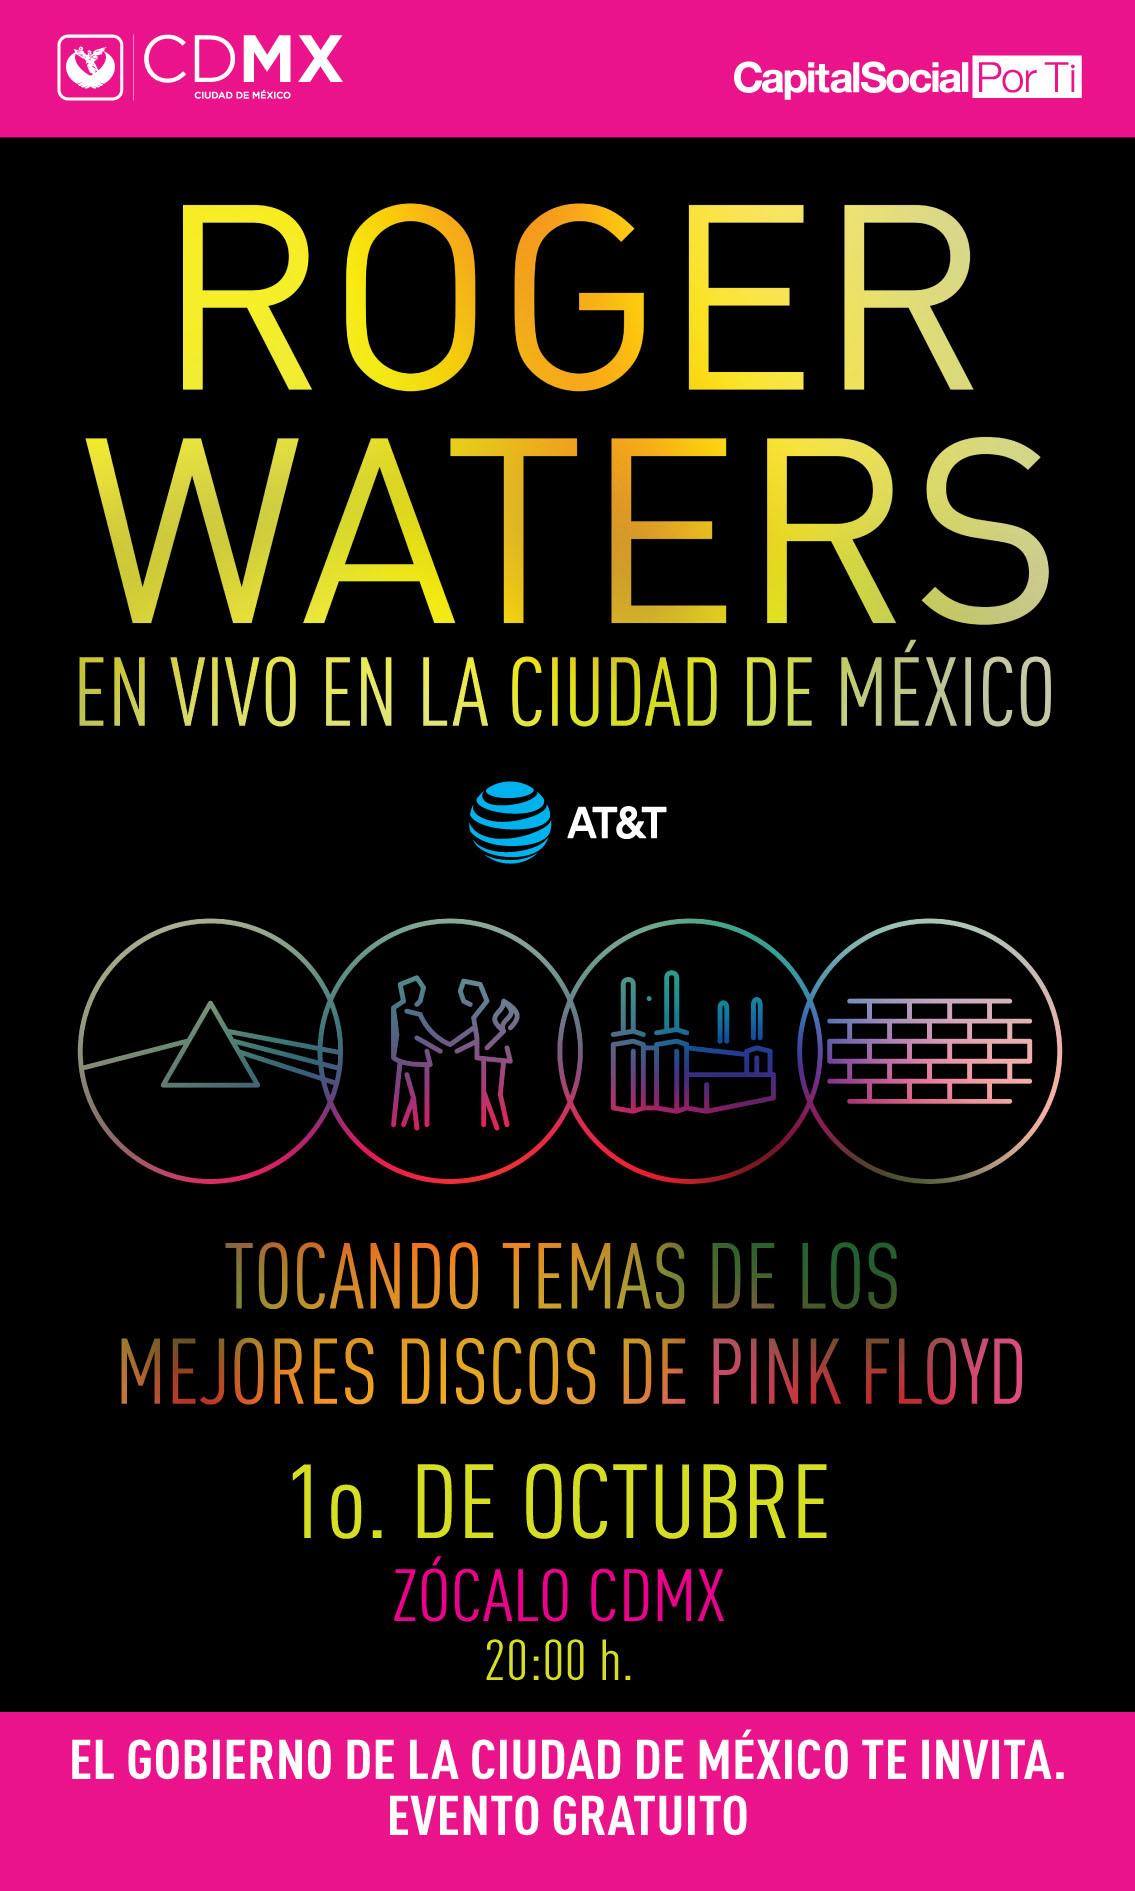 ROGER WATERS GRATIS EN EL ZÓCALO, NOSOTROS LO ADVERTIMOS